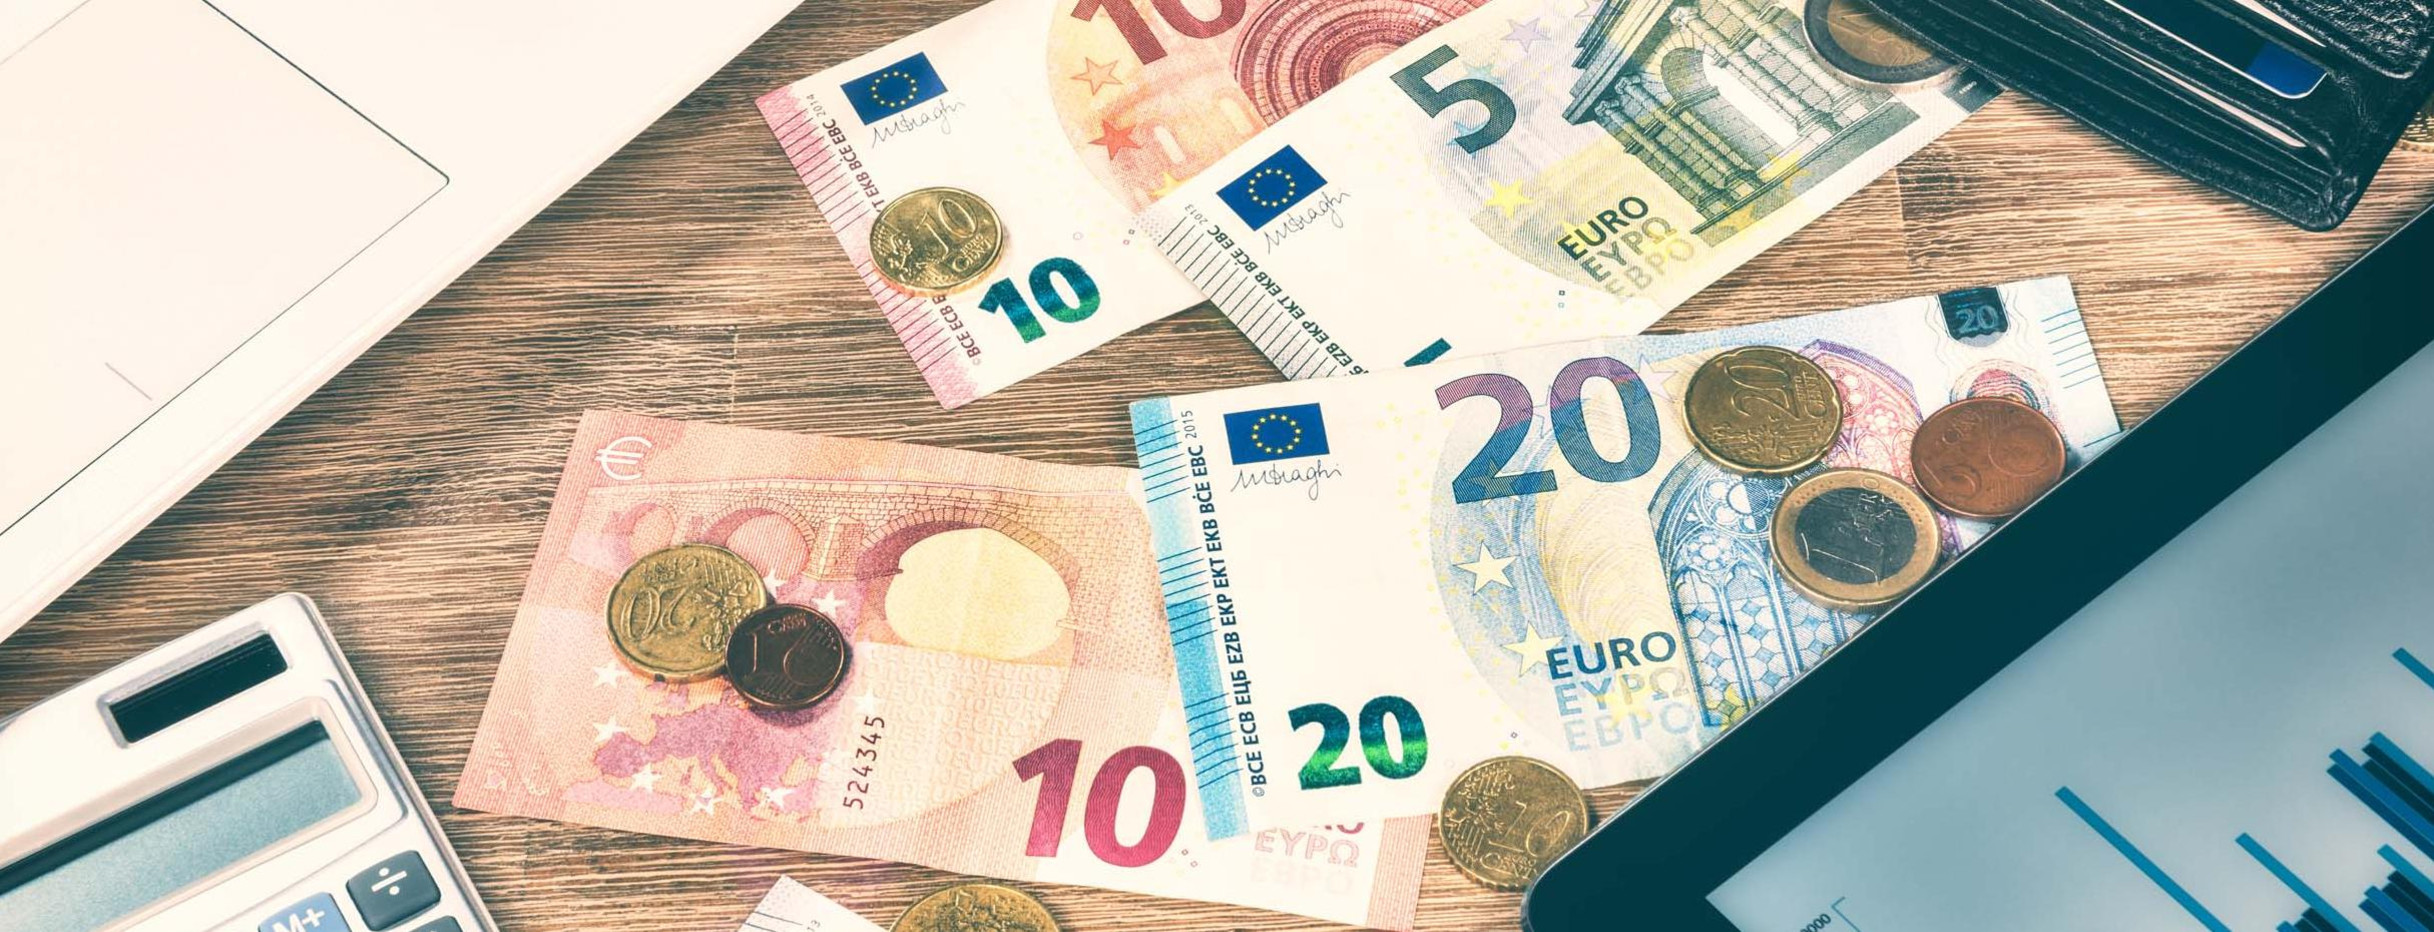 Euromünzen, Geldscheine und Diagramm auf einem Tablet